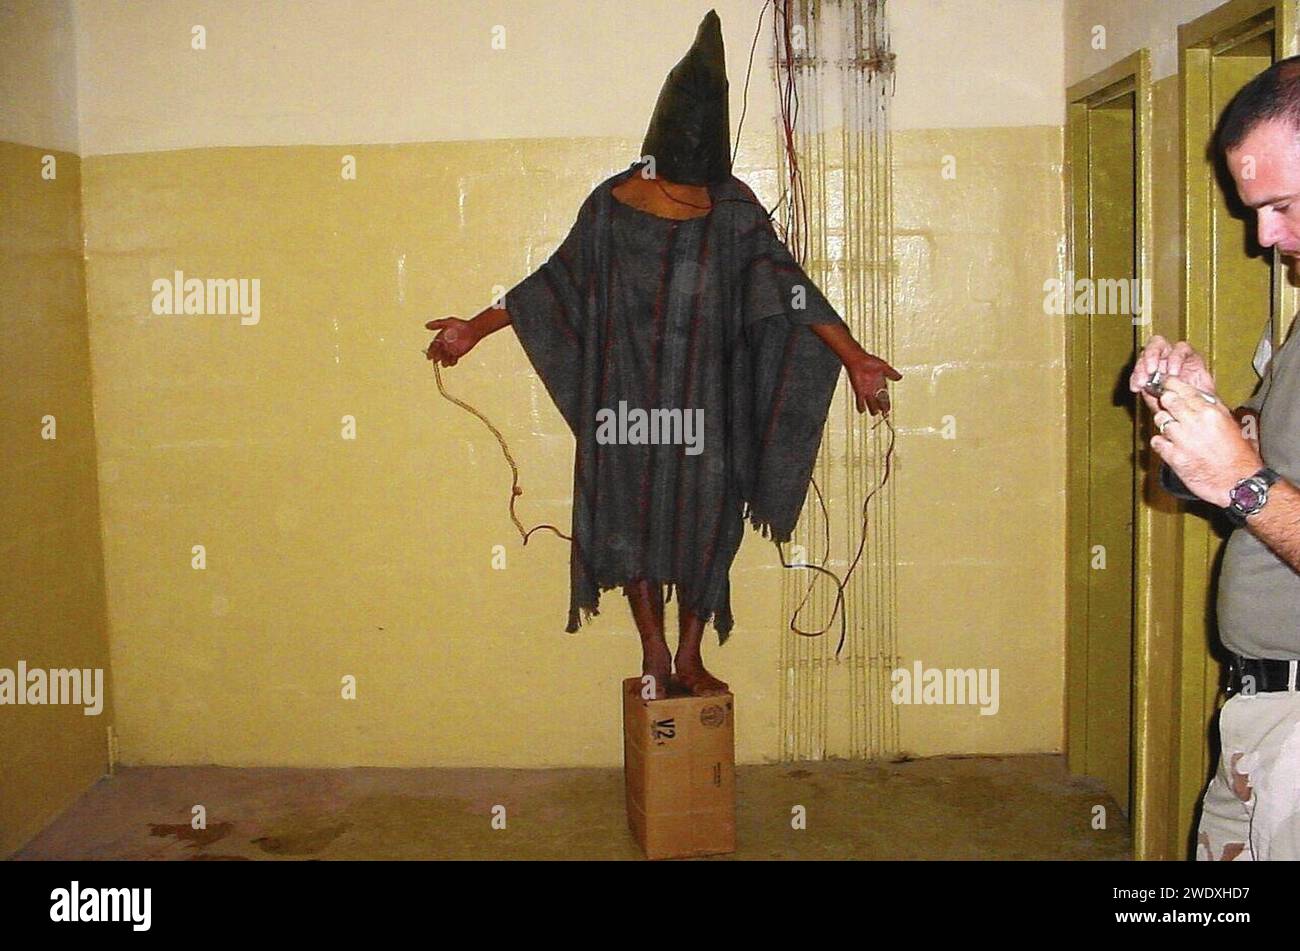 Abu Ghraib 17a. Stock Photo